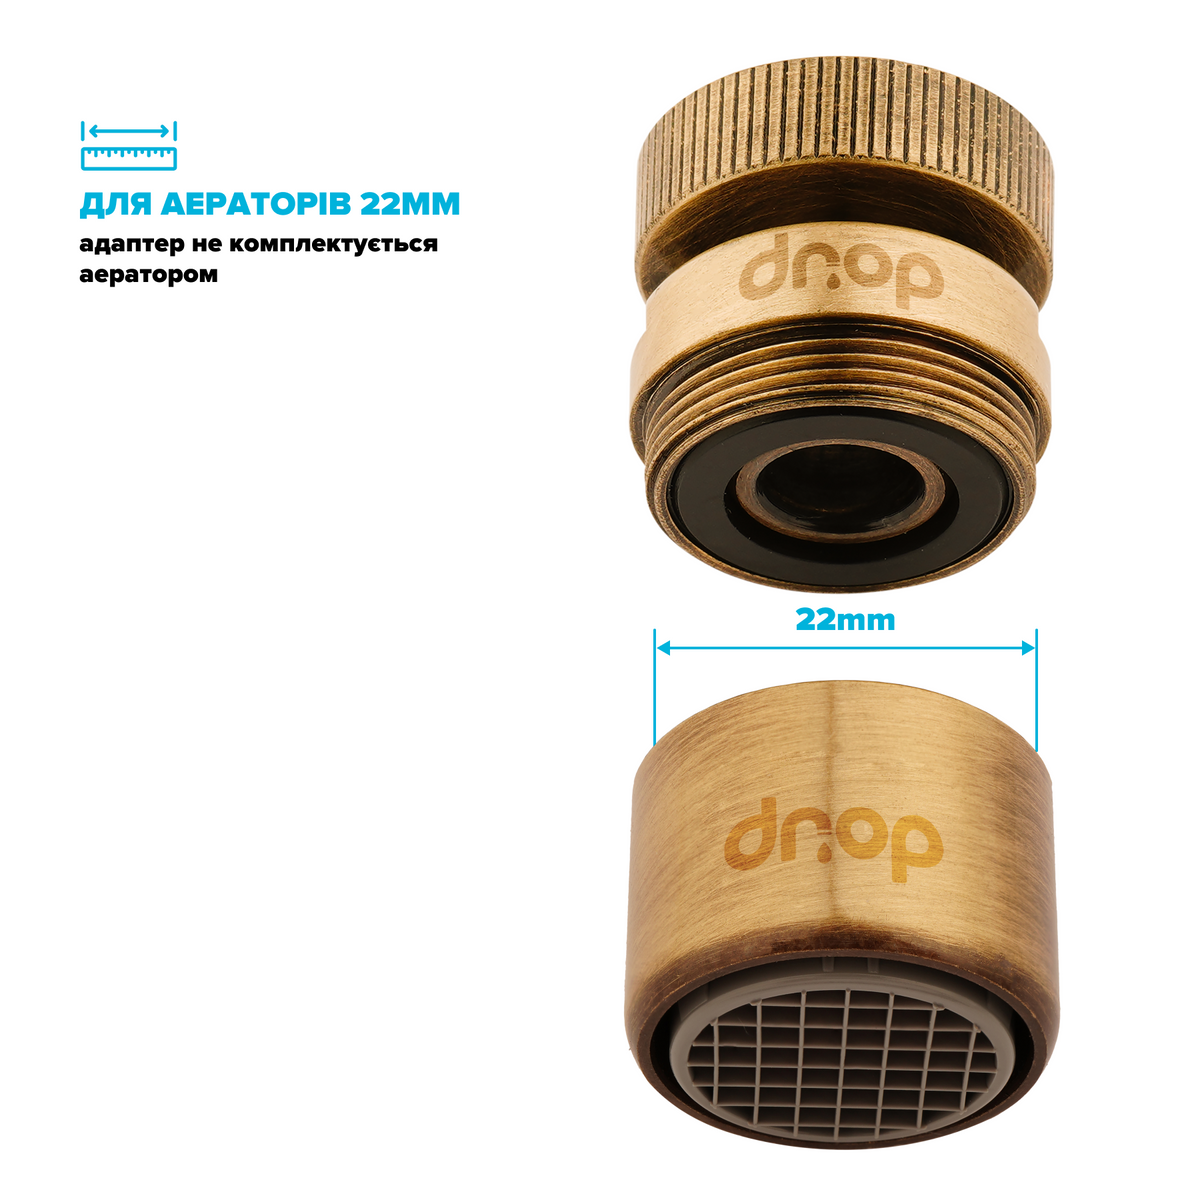 Поворотный 360° адаптер DROP СOLOR CL360F-BRN внутренняя резьба 22 мм угол 15° латунь цвет бронзовый